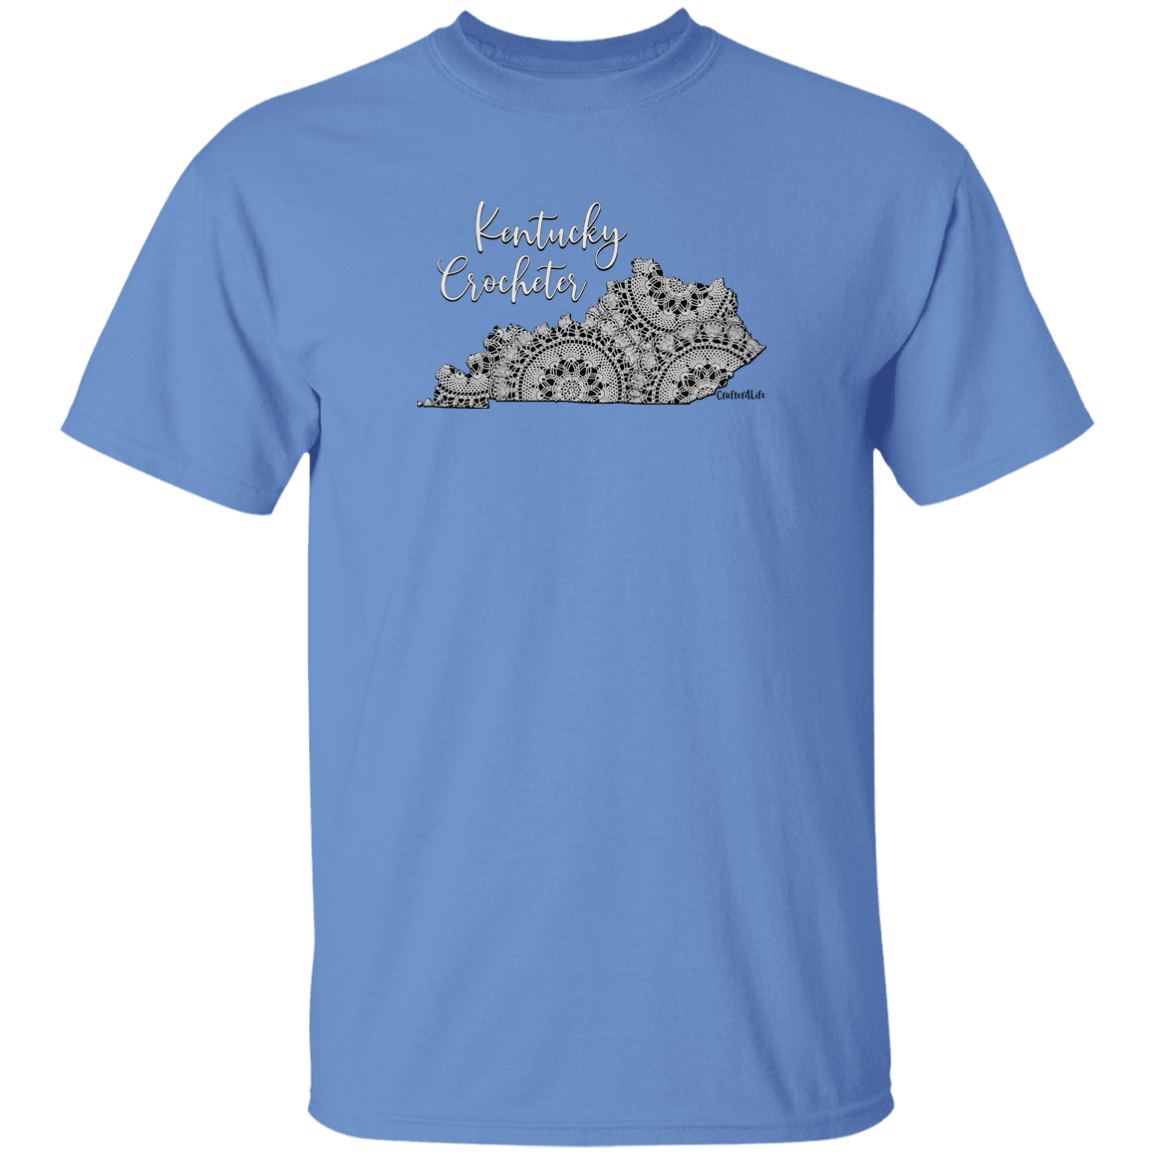 Kentucky Crocheter T-Shirt